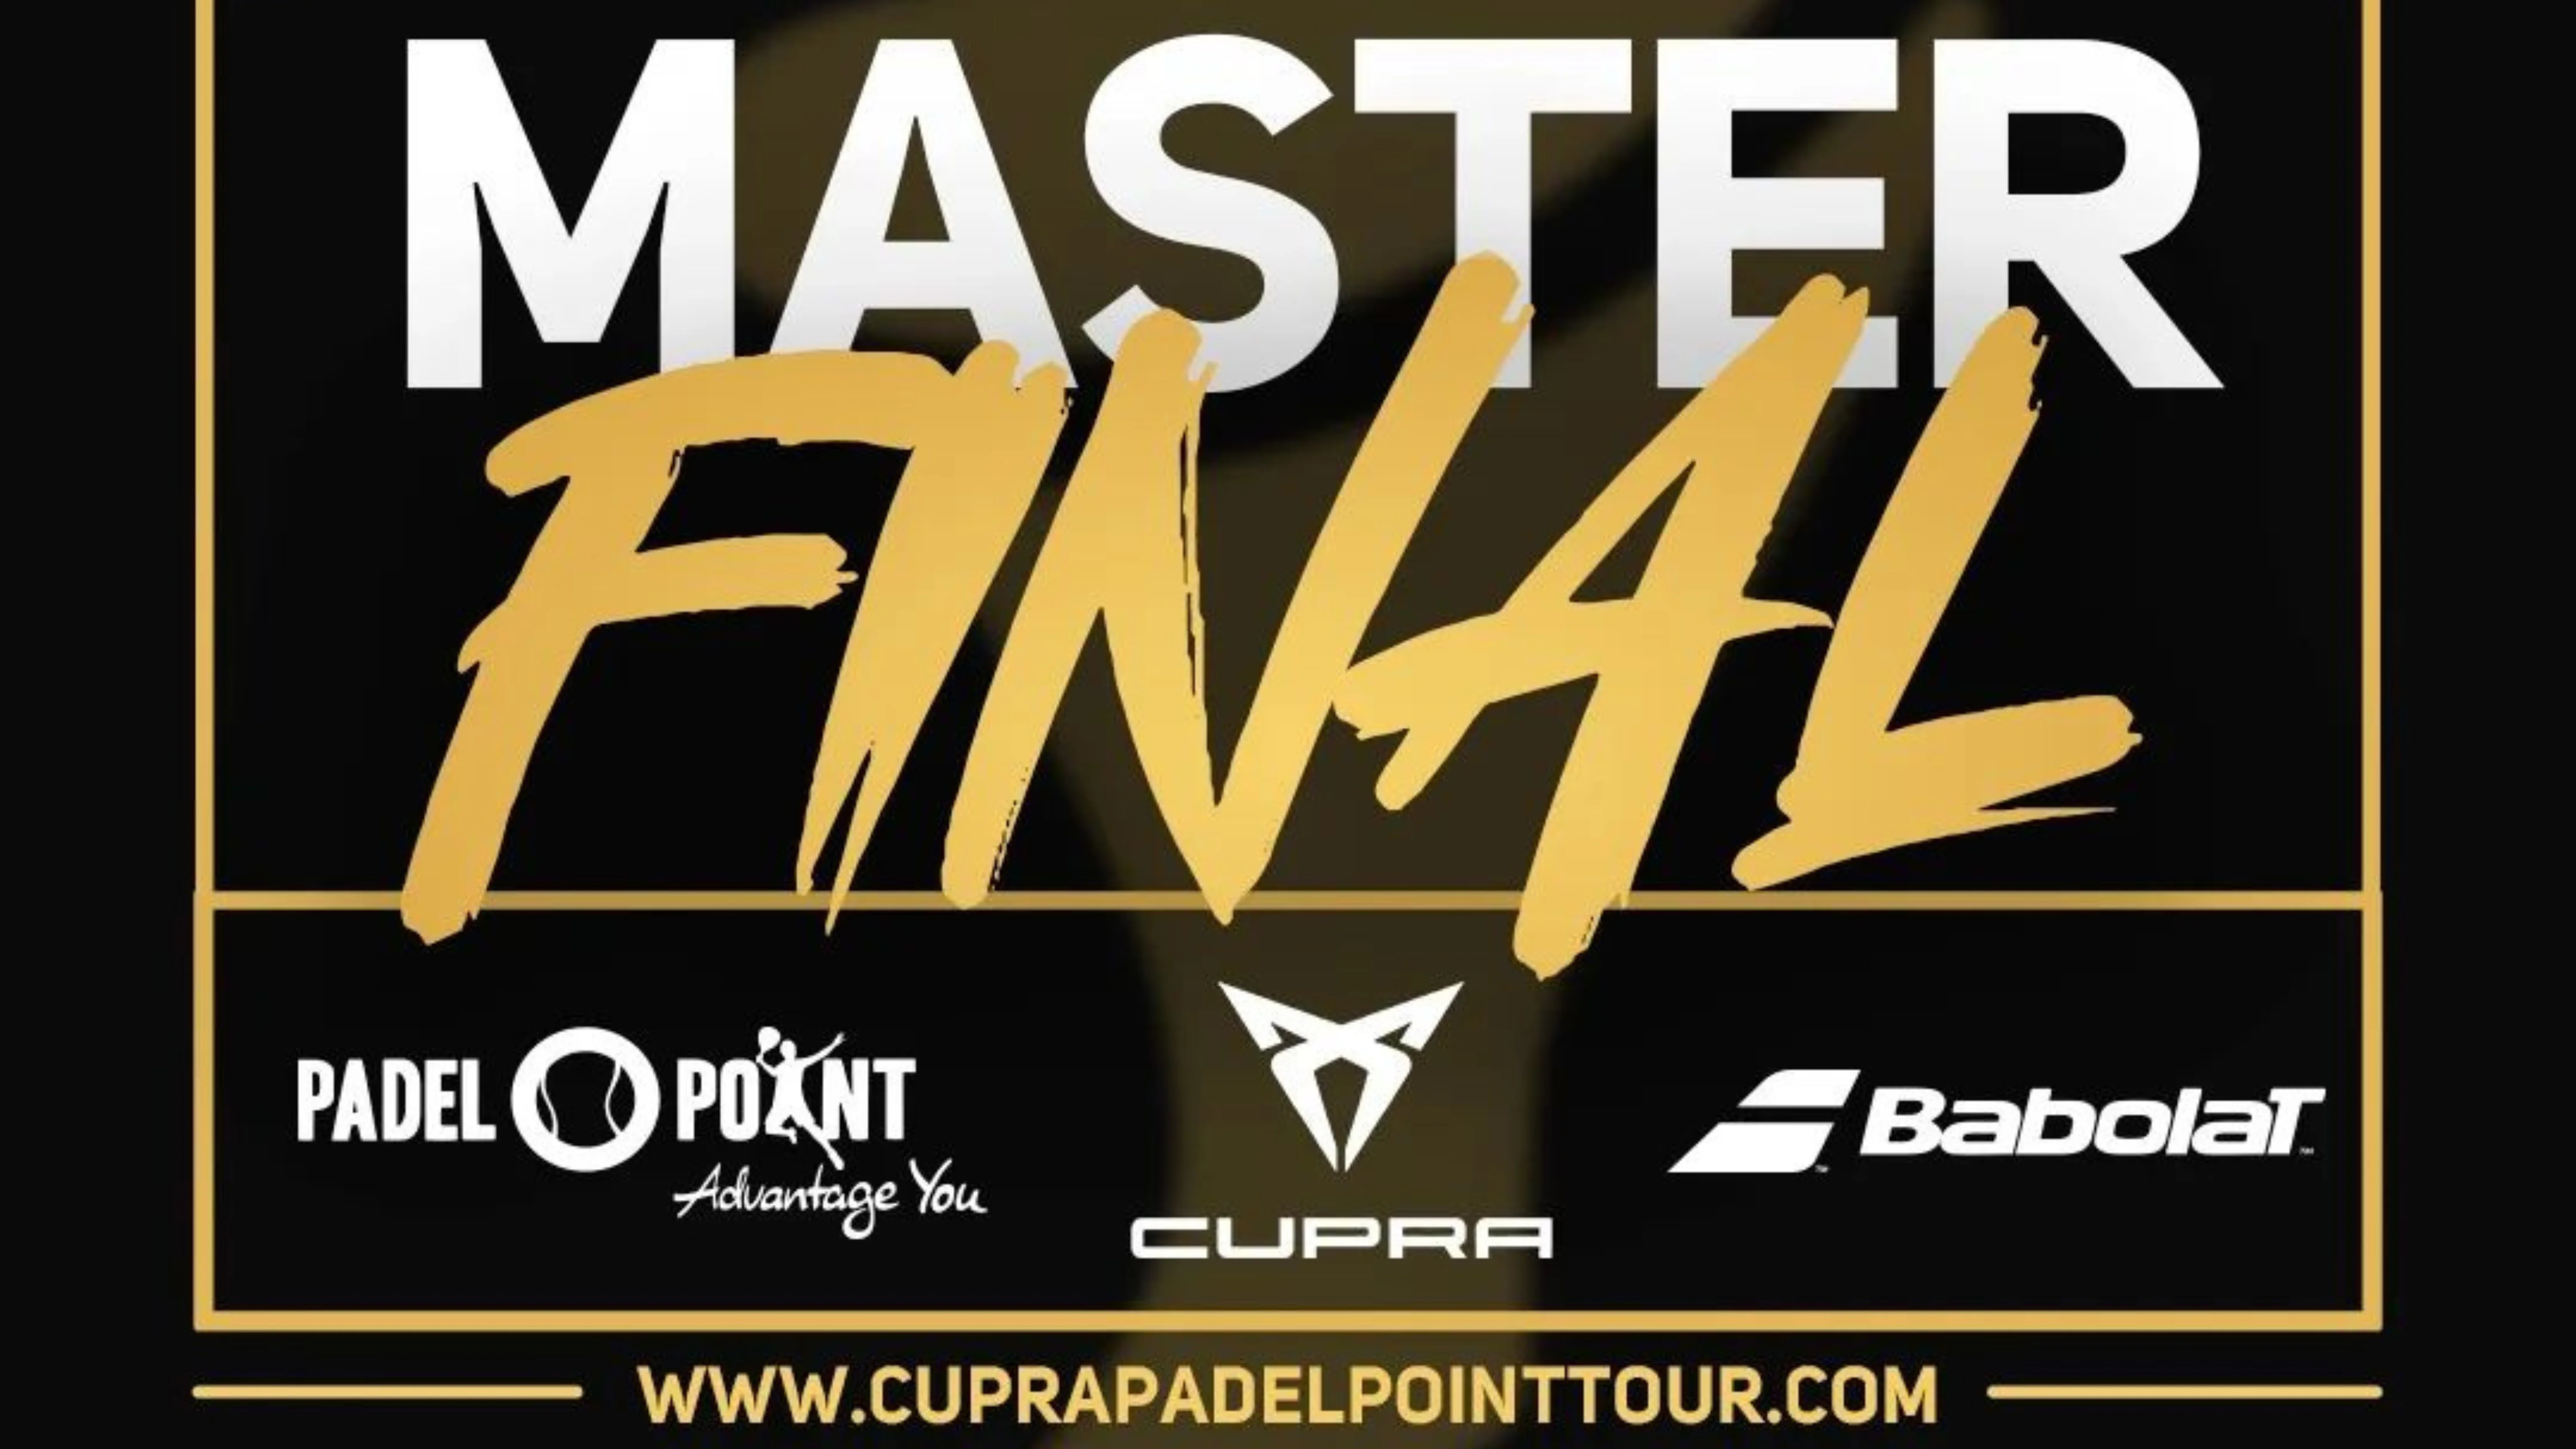 O Master Final Cupra Padel-Point Tour o 4PADEL Toulouse neste fim de semana!